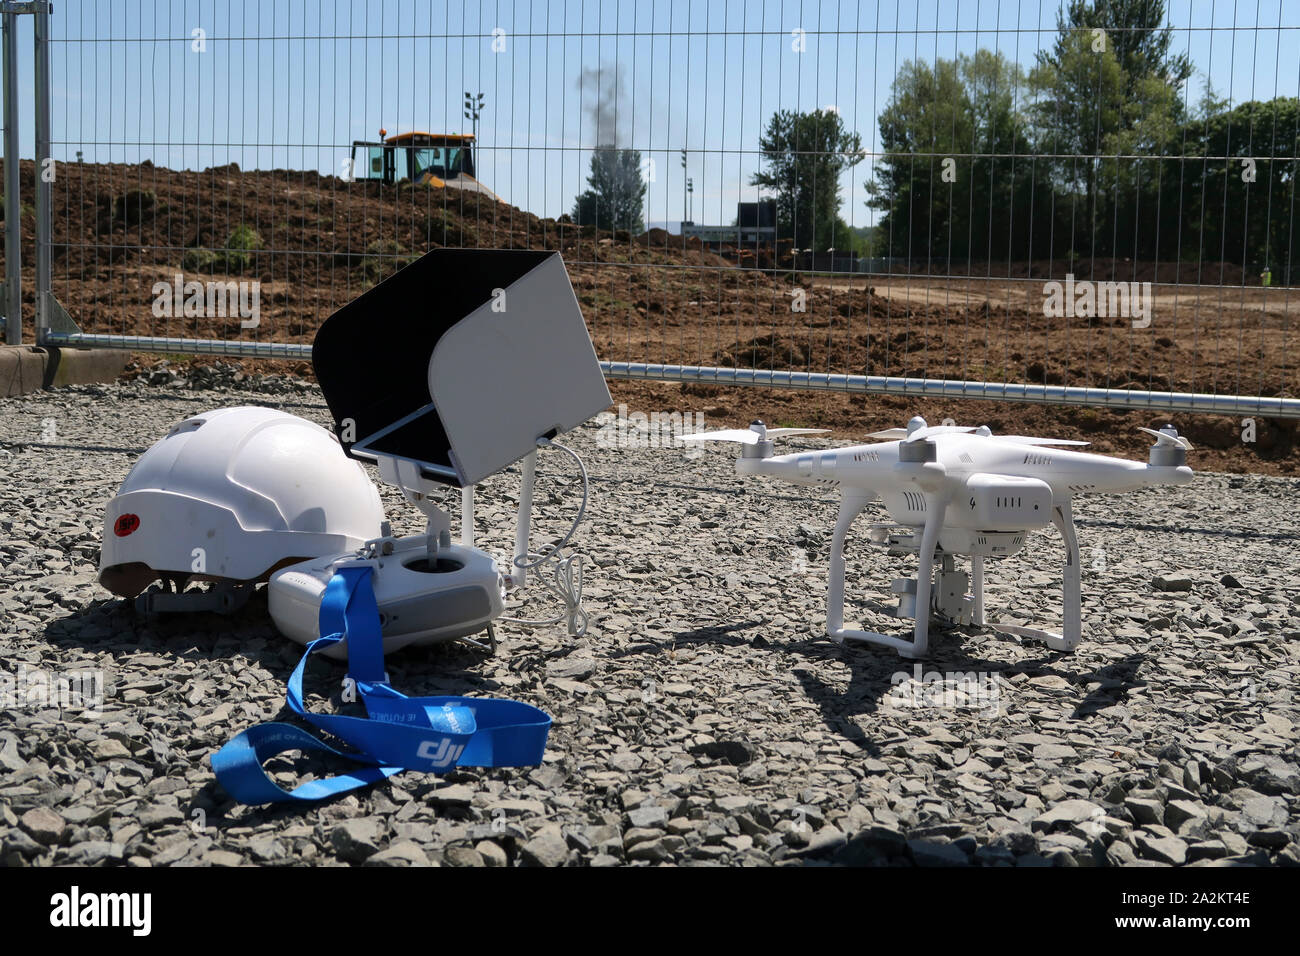 DJI Phantom drone on building site Stock Photo